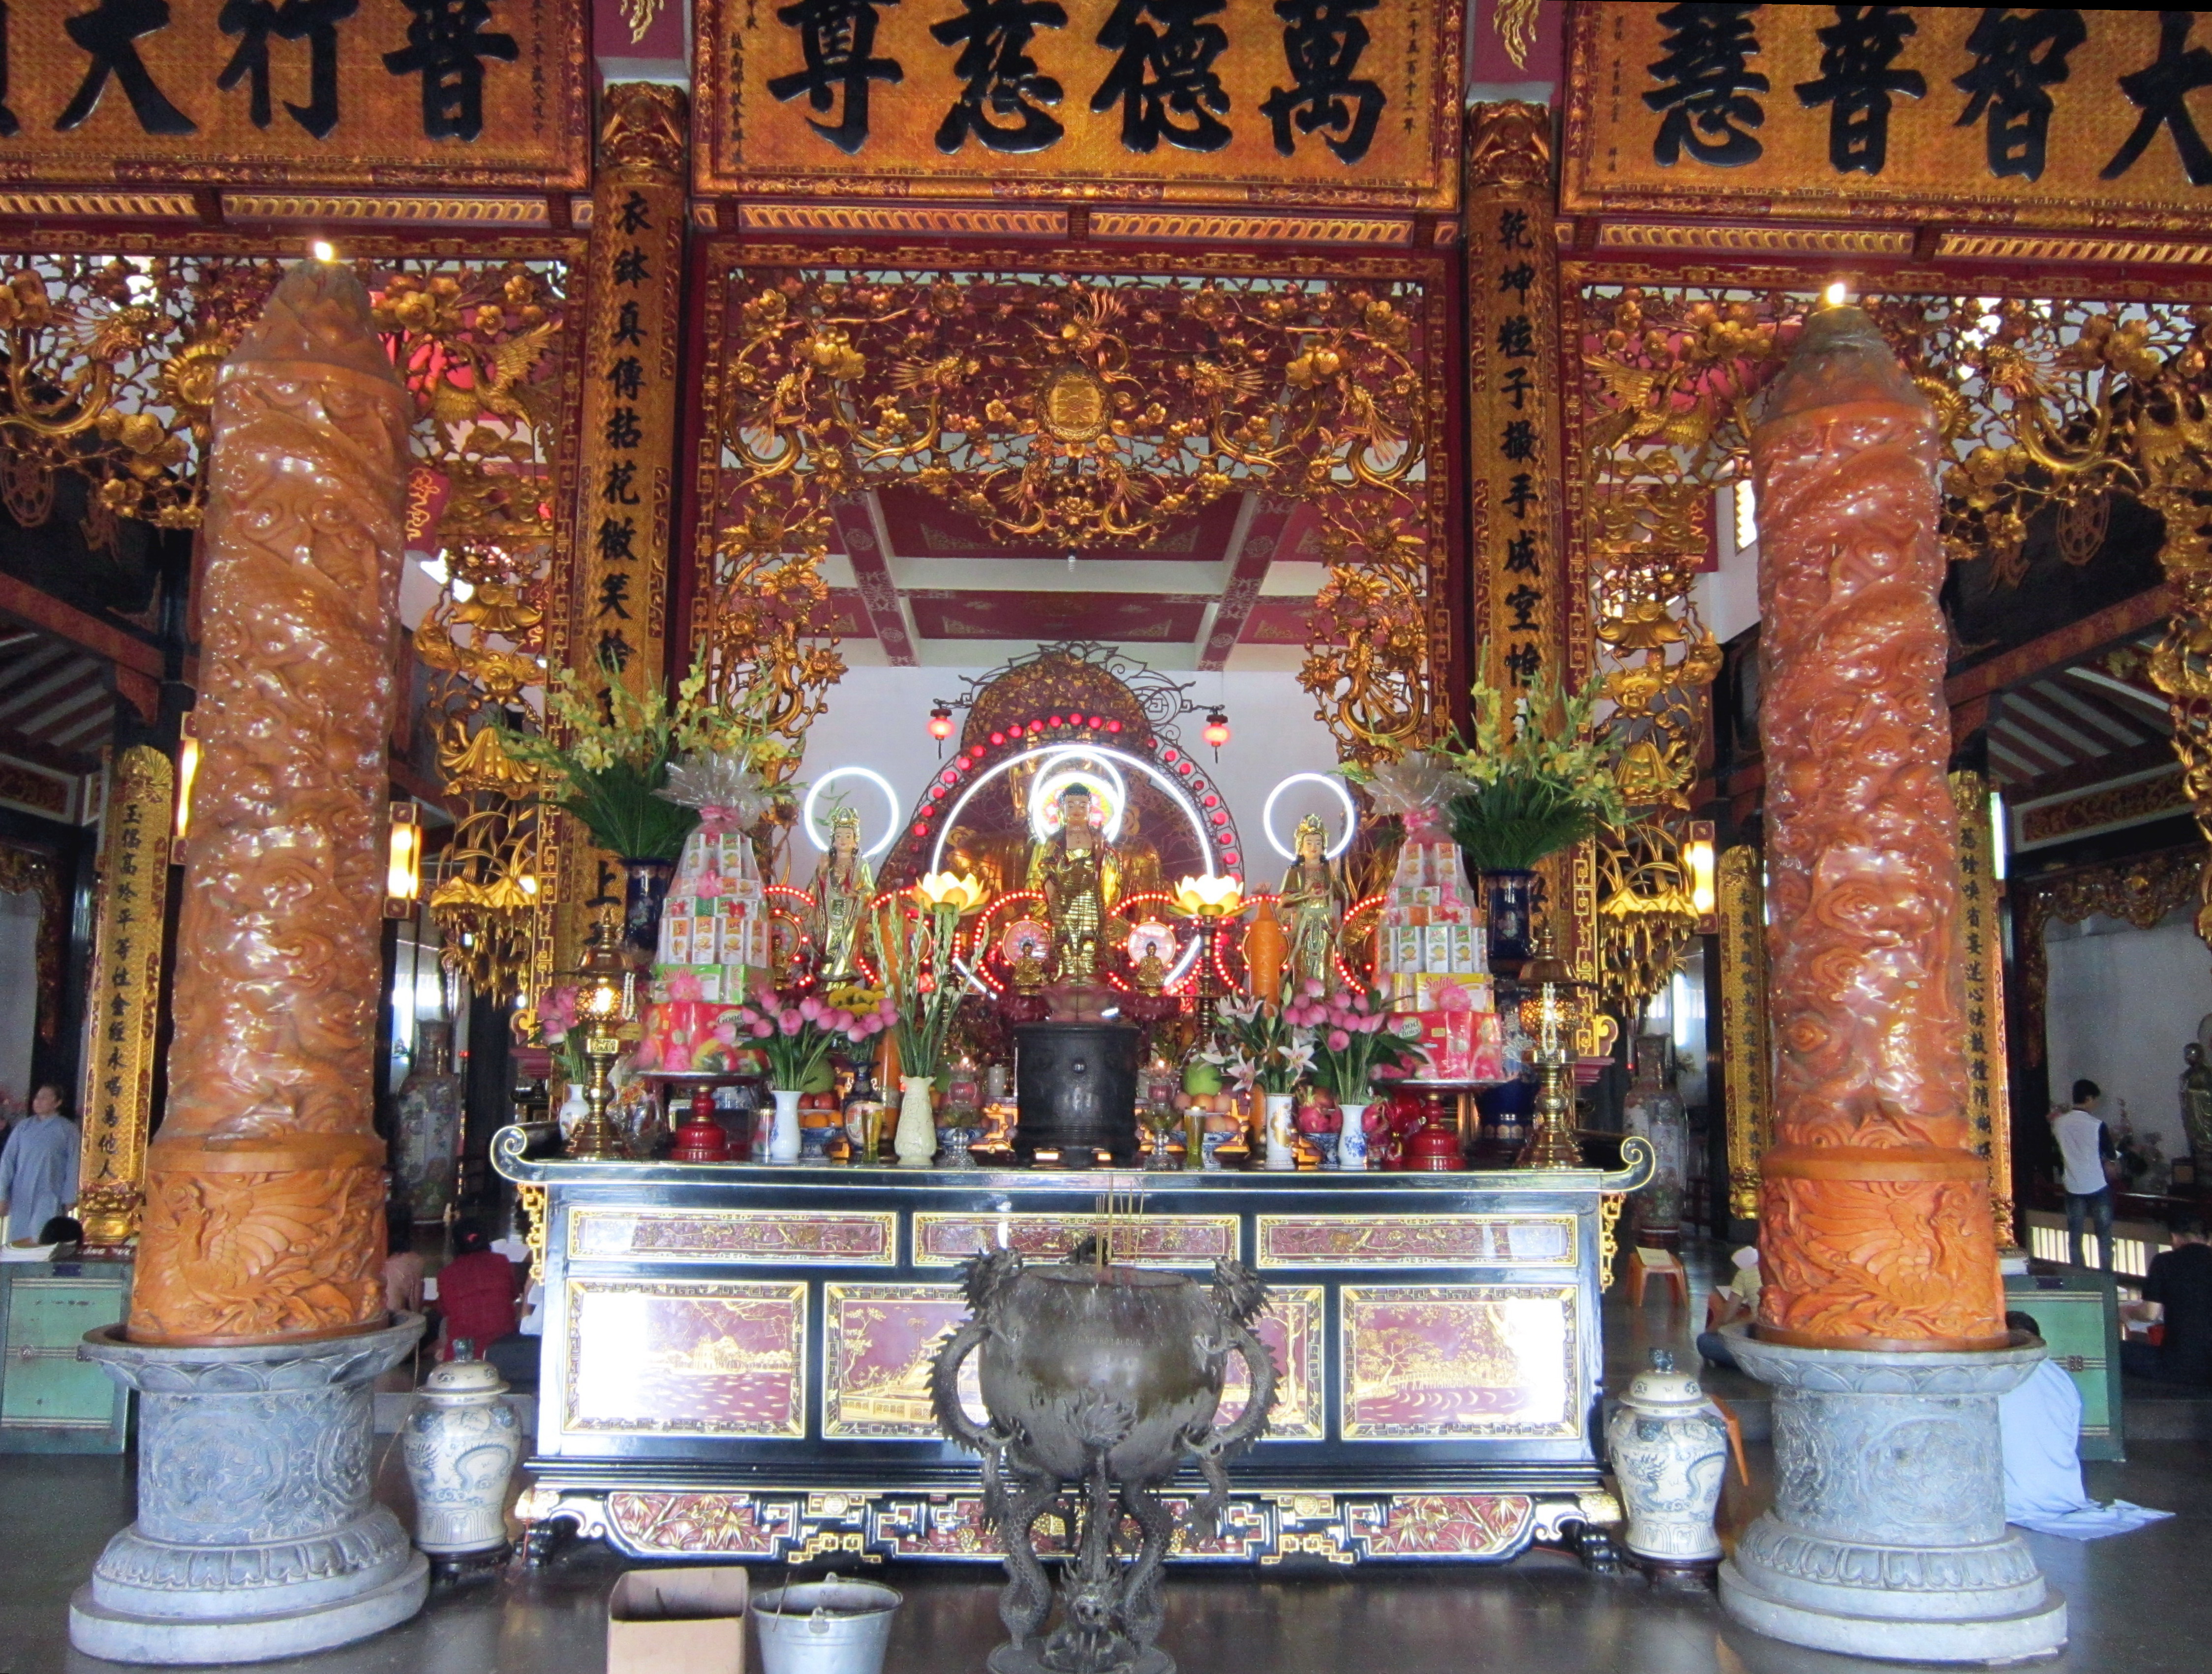 Tìm hiểu về bàn thờ Phật ở chùa - Thiết kế độc đáo, chất liệu tốt